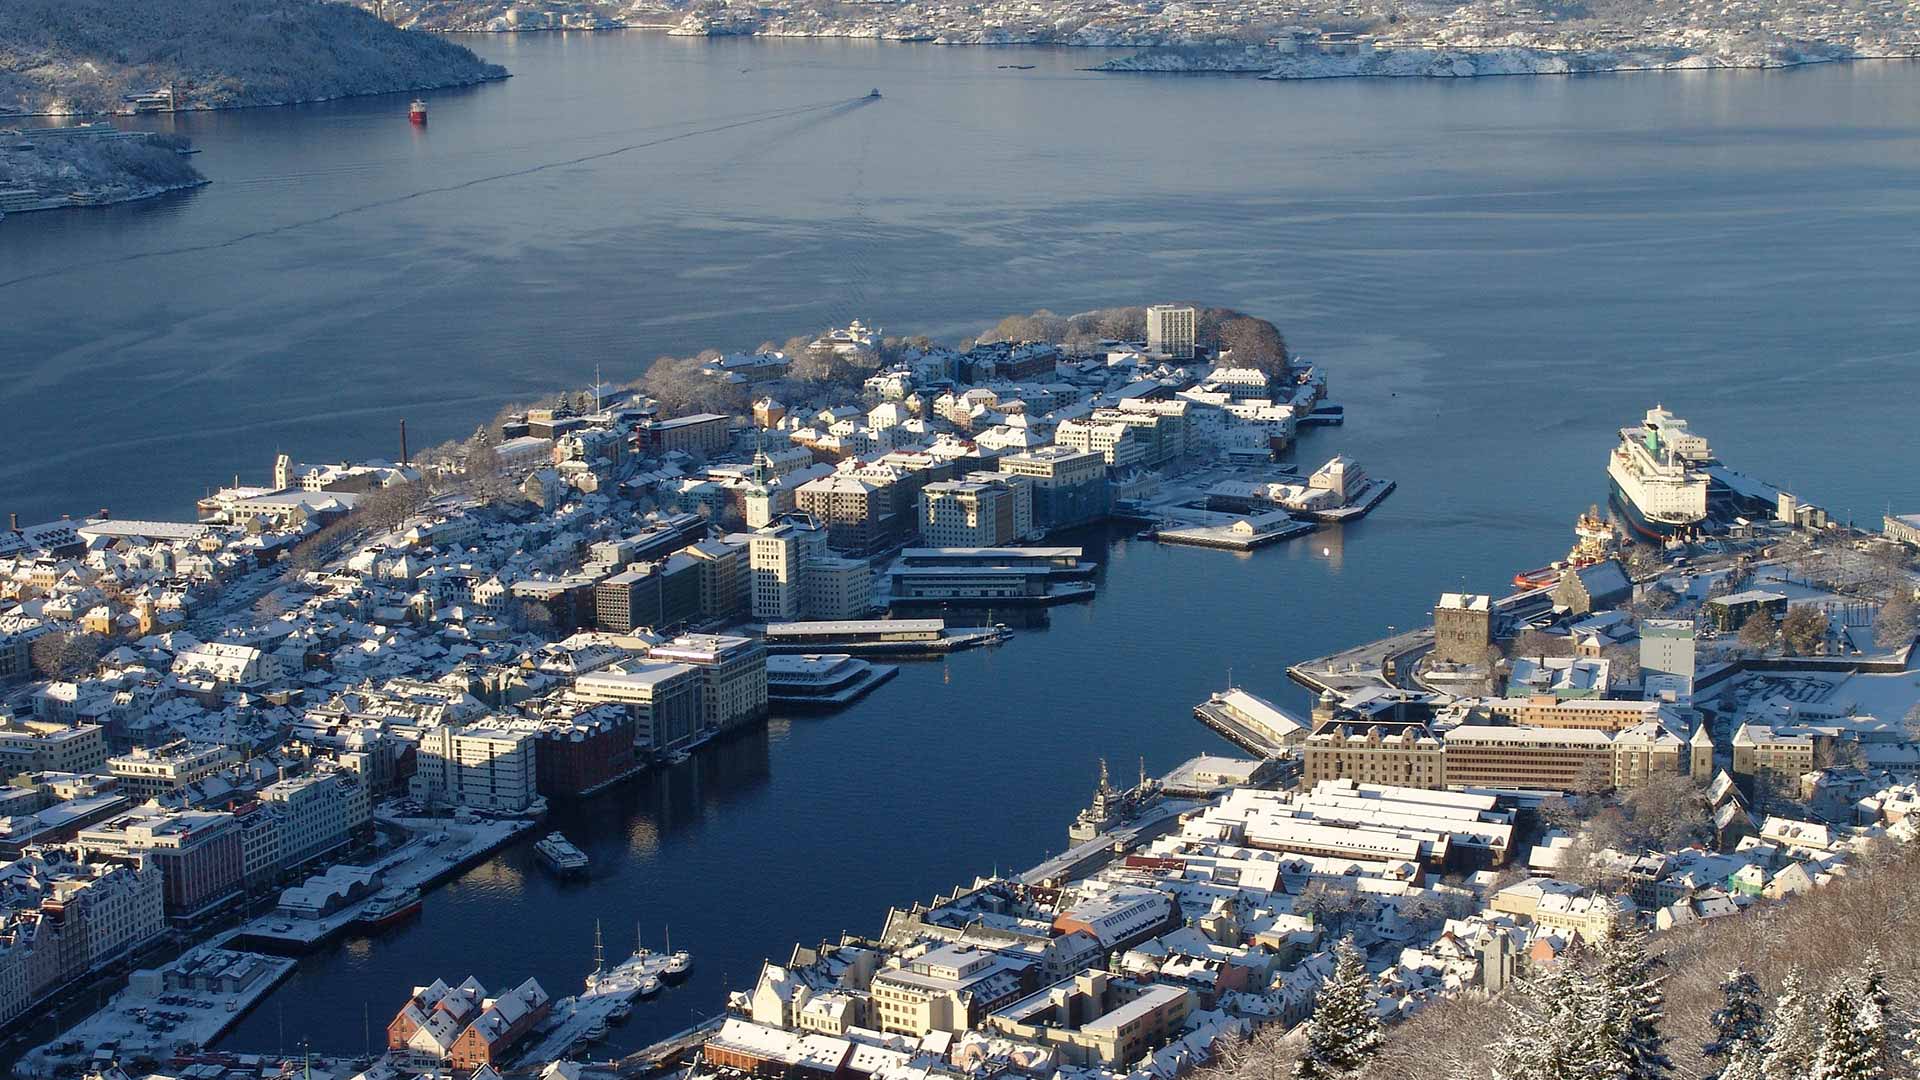 Bergen in Norway